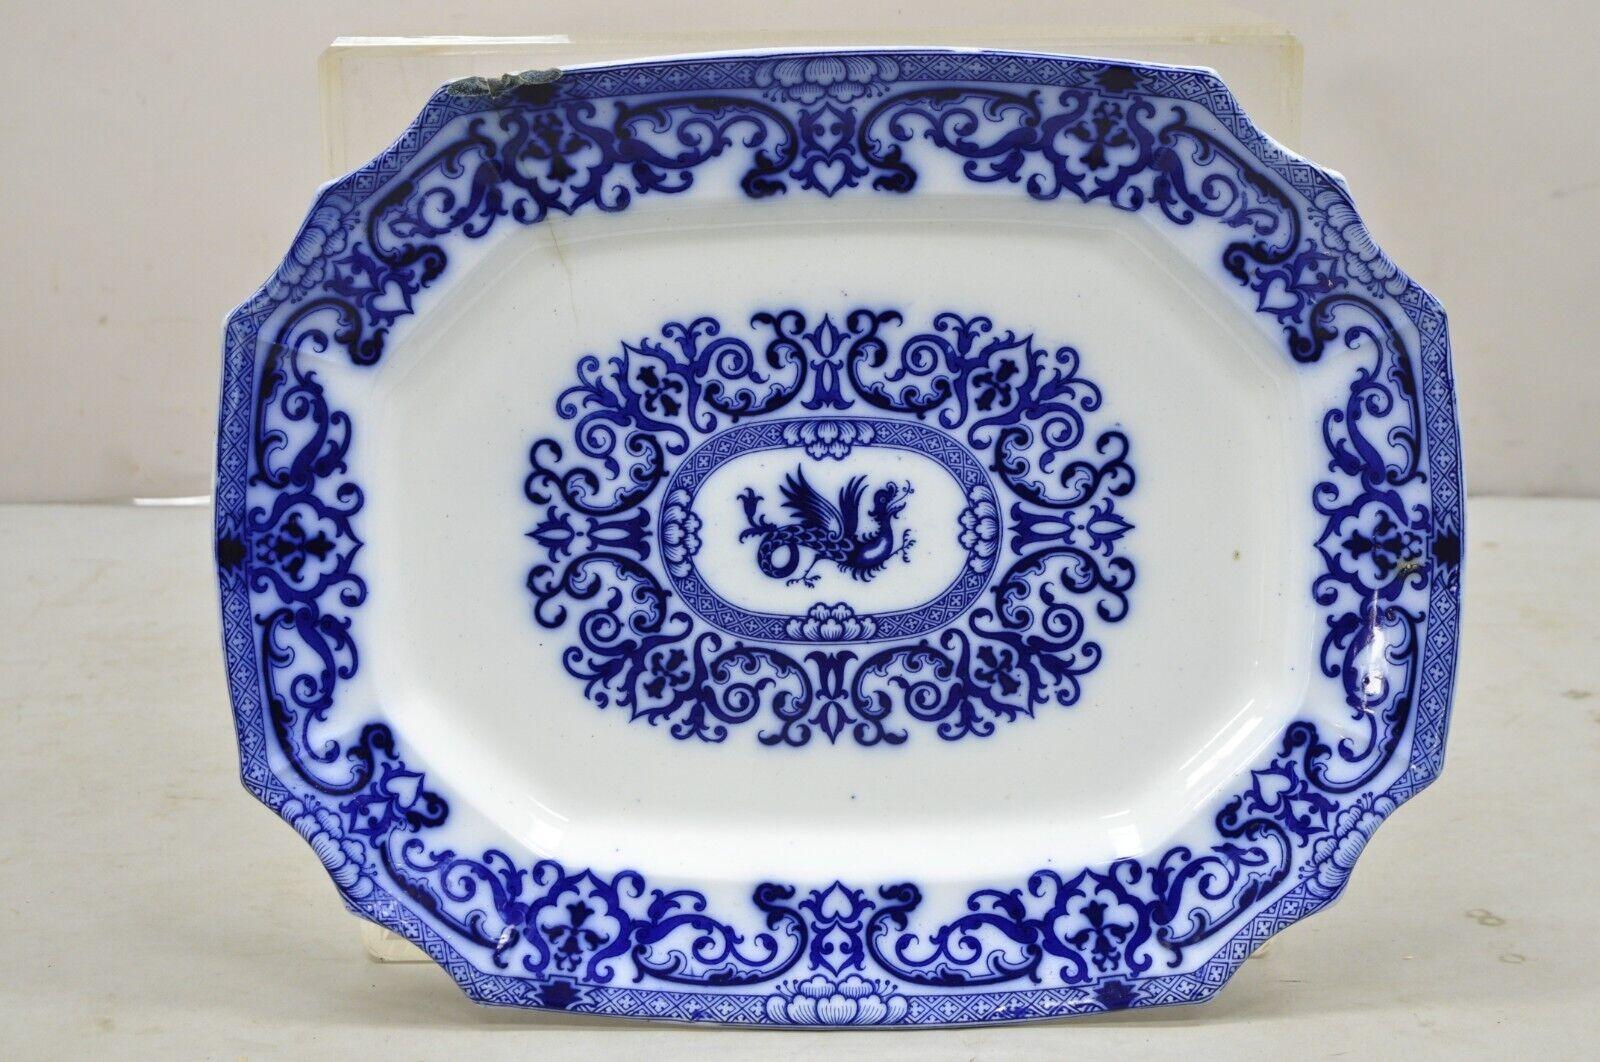 Ancien plat en pierre de fer à transfert bleu et blanc à fleurs anglaises, grand plat avec dragon chinois. Vers les années 1800. Dimensions : 2